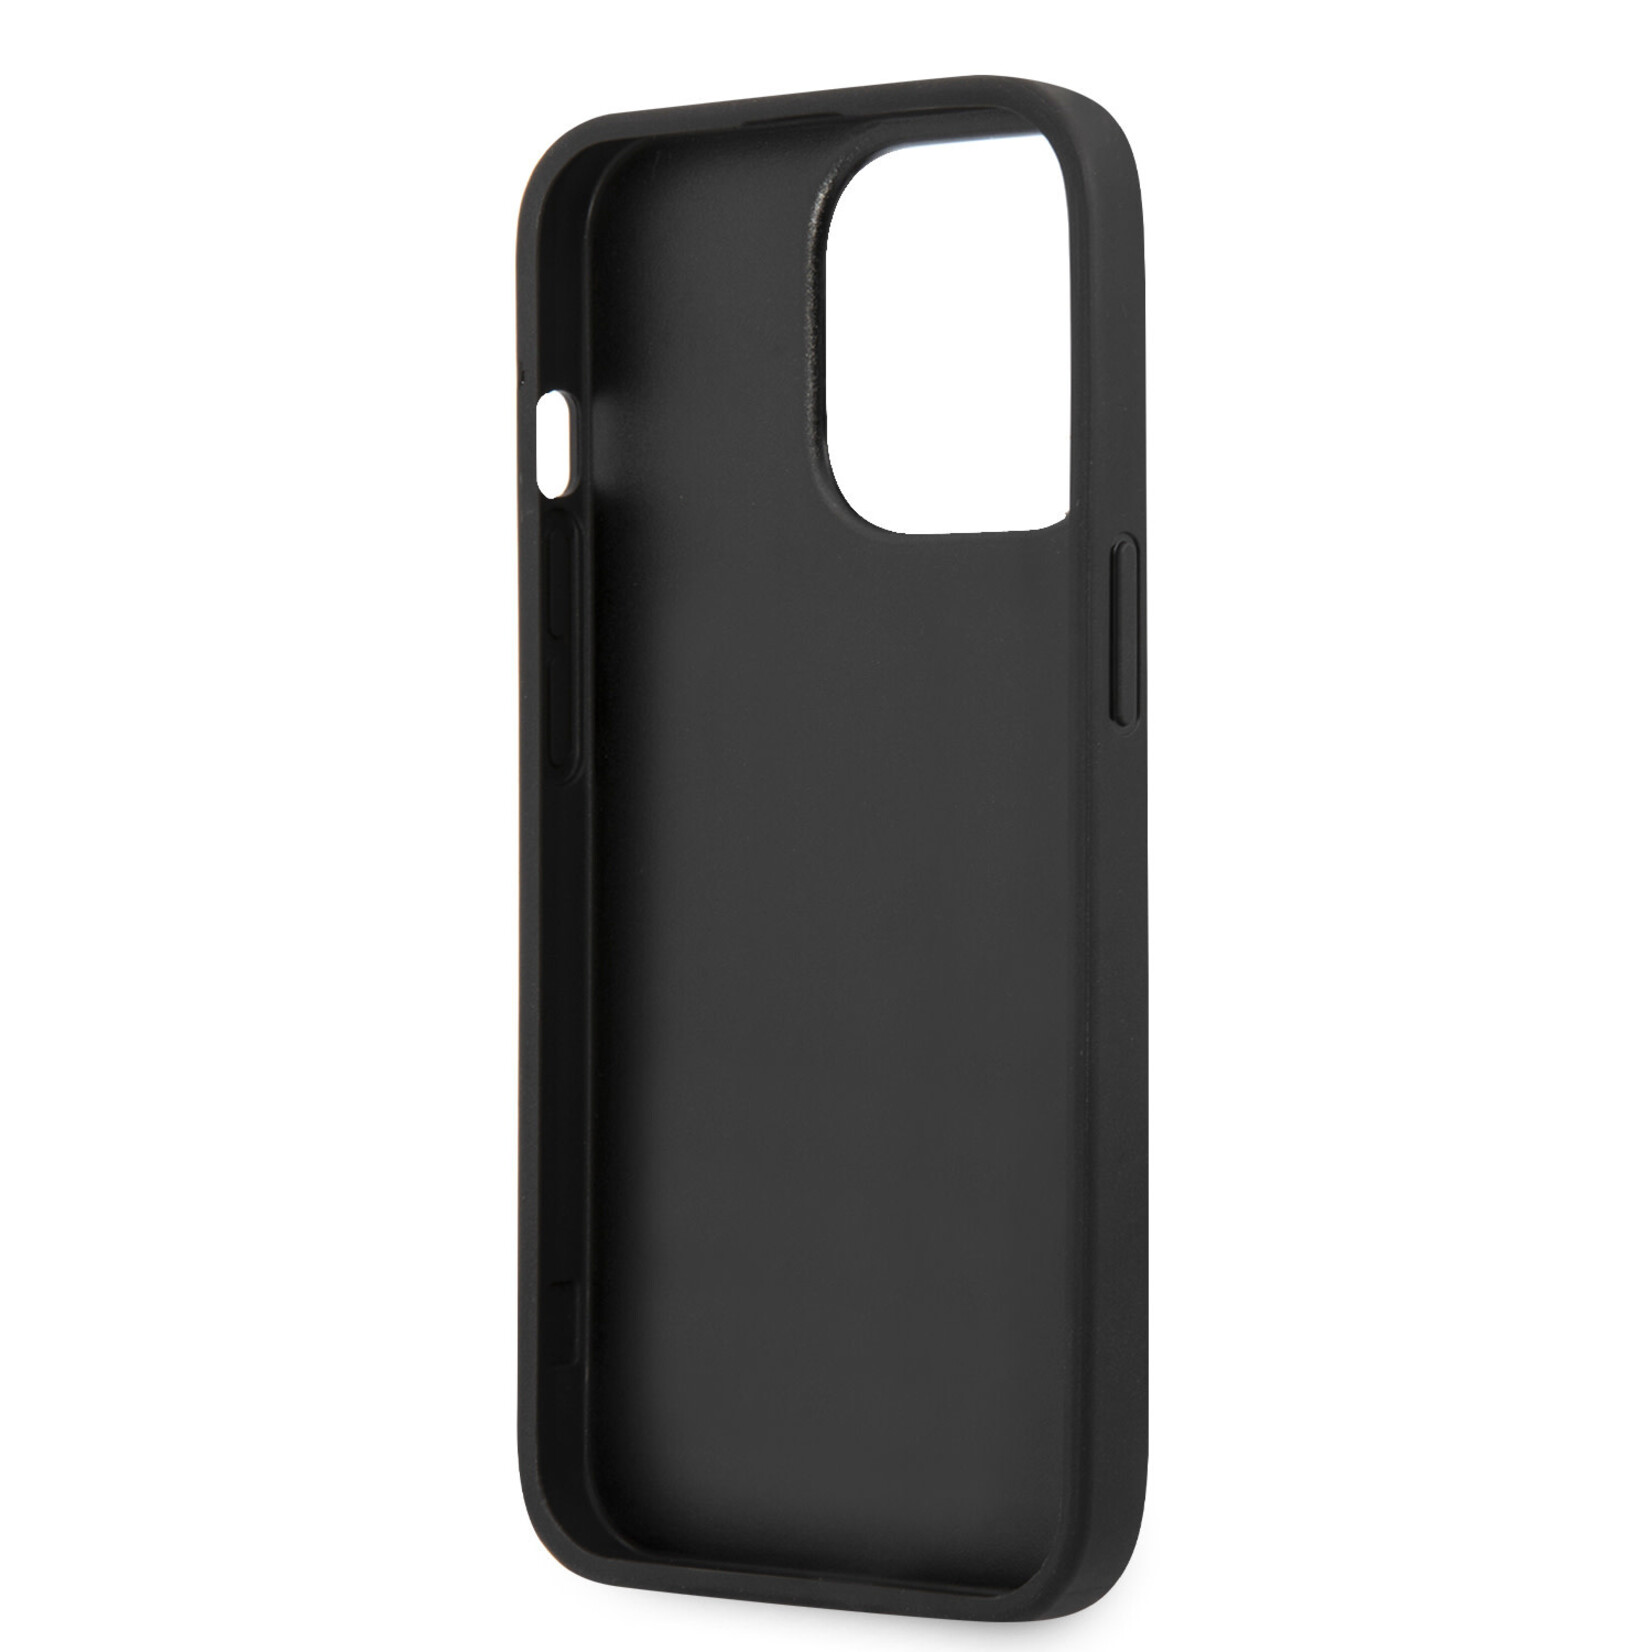 Guess Guess Telefoonhoesje voor Apple iPhone 13 Pro - Back Cover, Kleur: Grijs/Zwart, PU Materiaal, Bescherming van Telefoon.